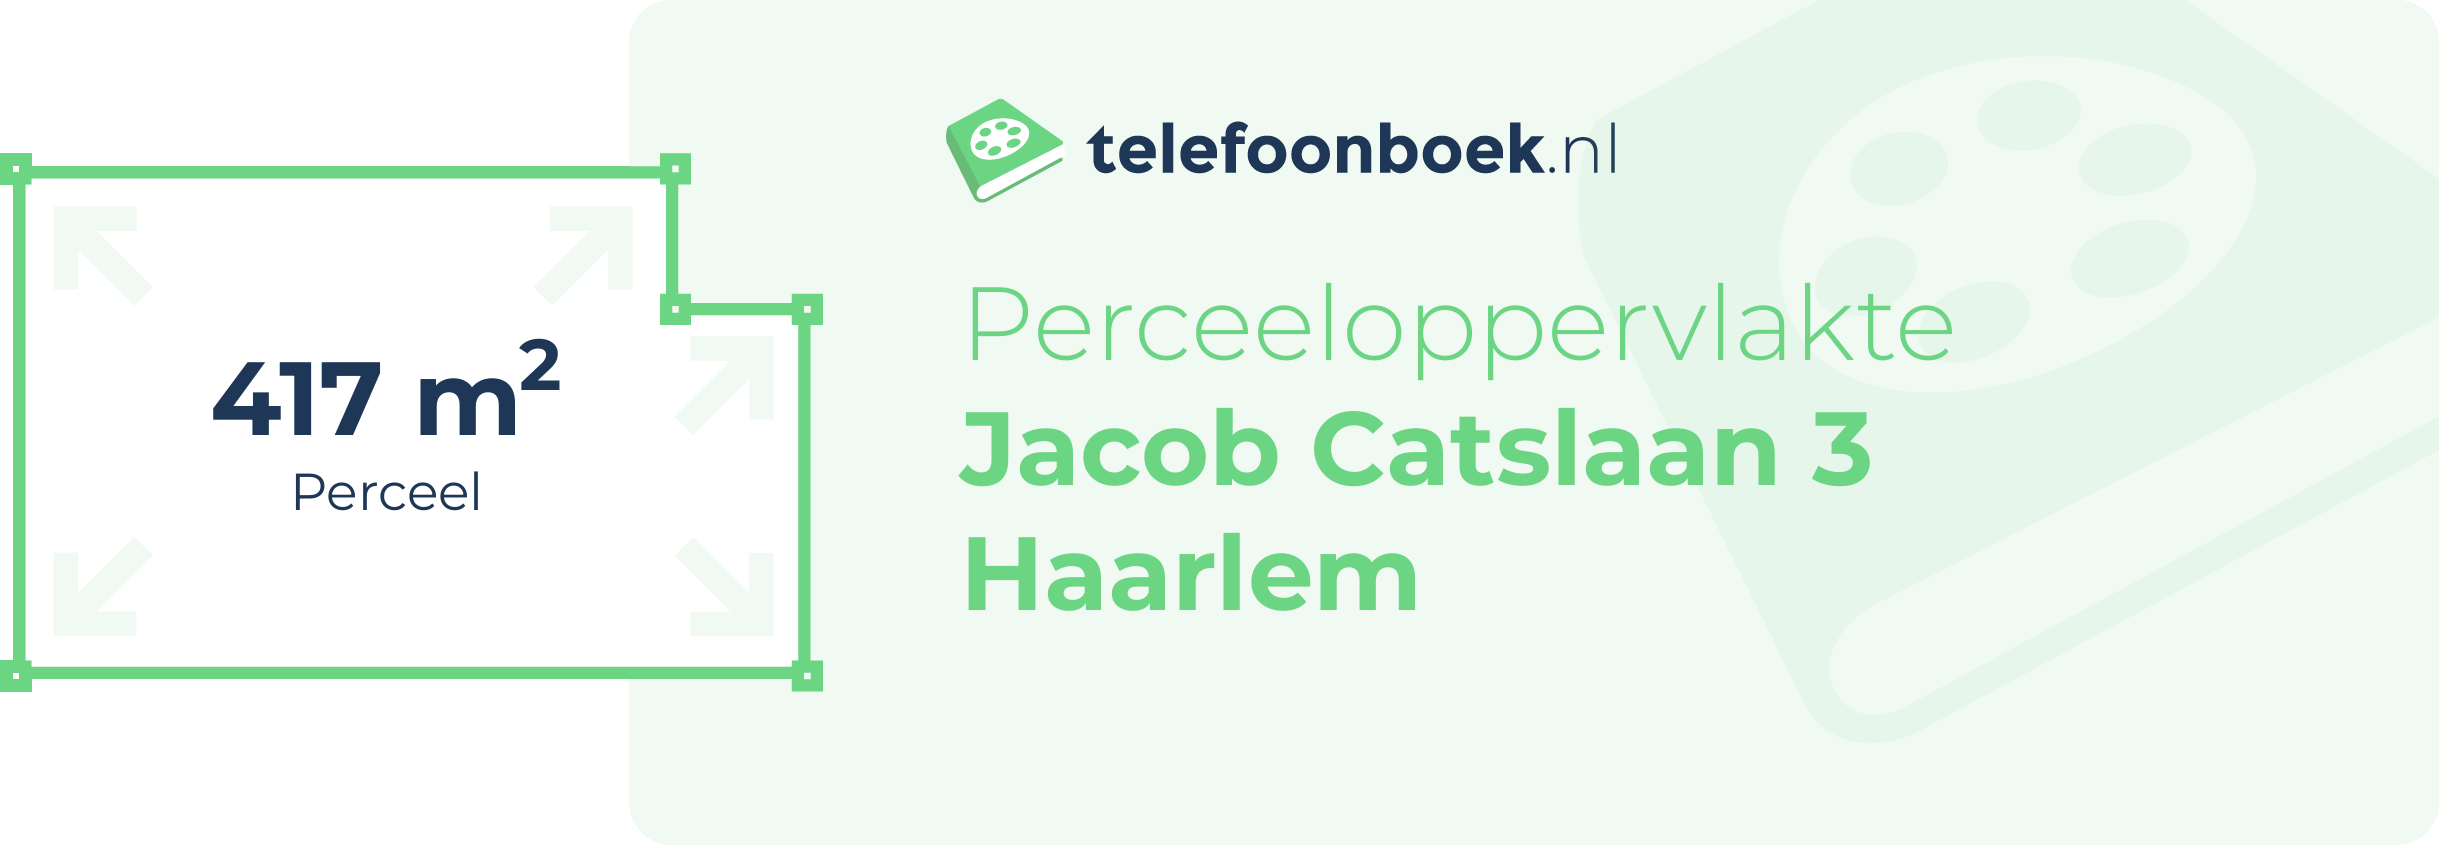 Perceeloppervlakte Jacob Catslaan 3 Haarlem